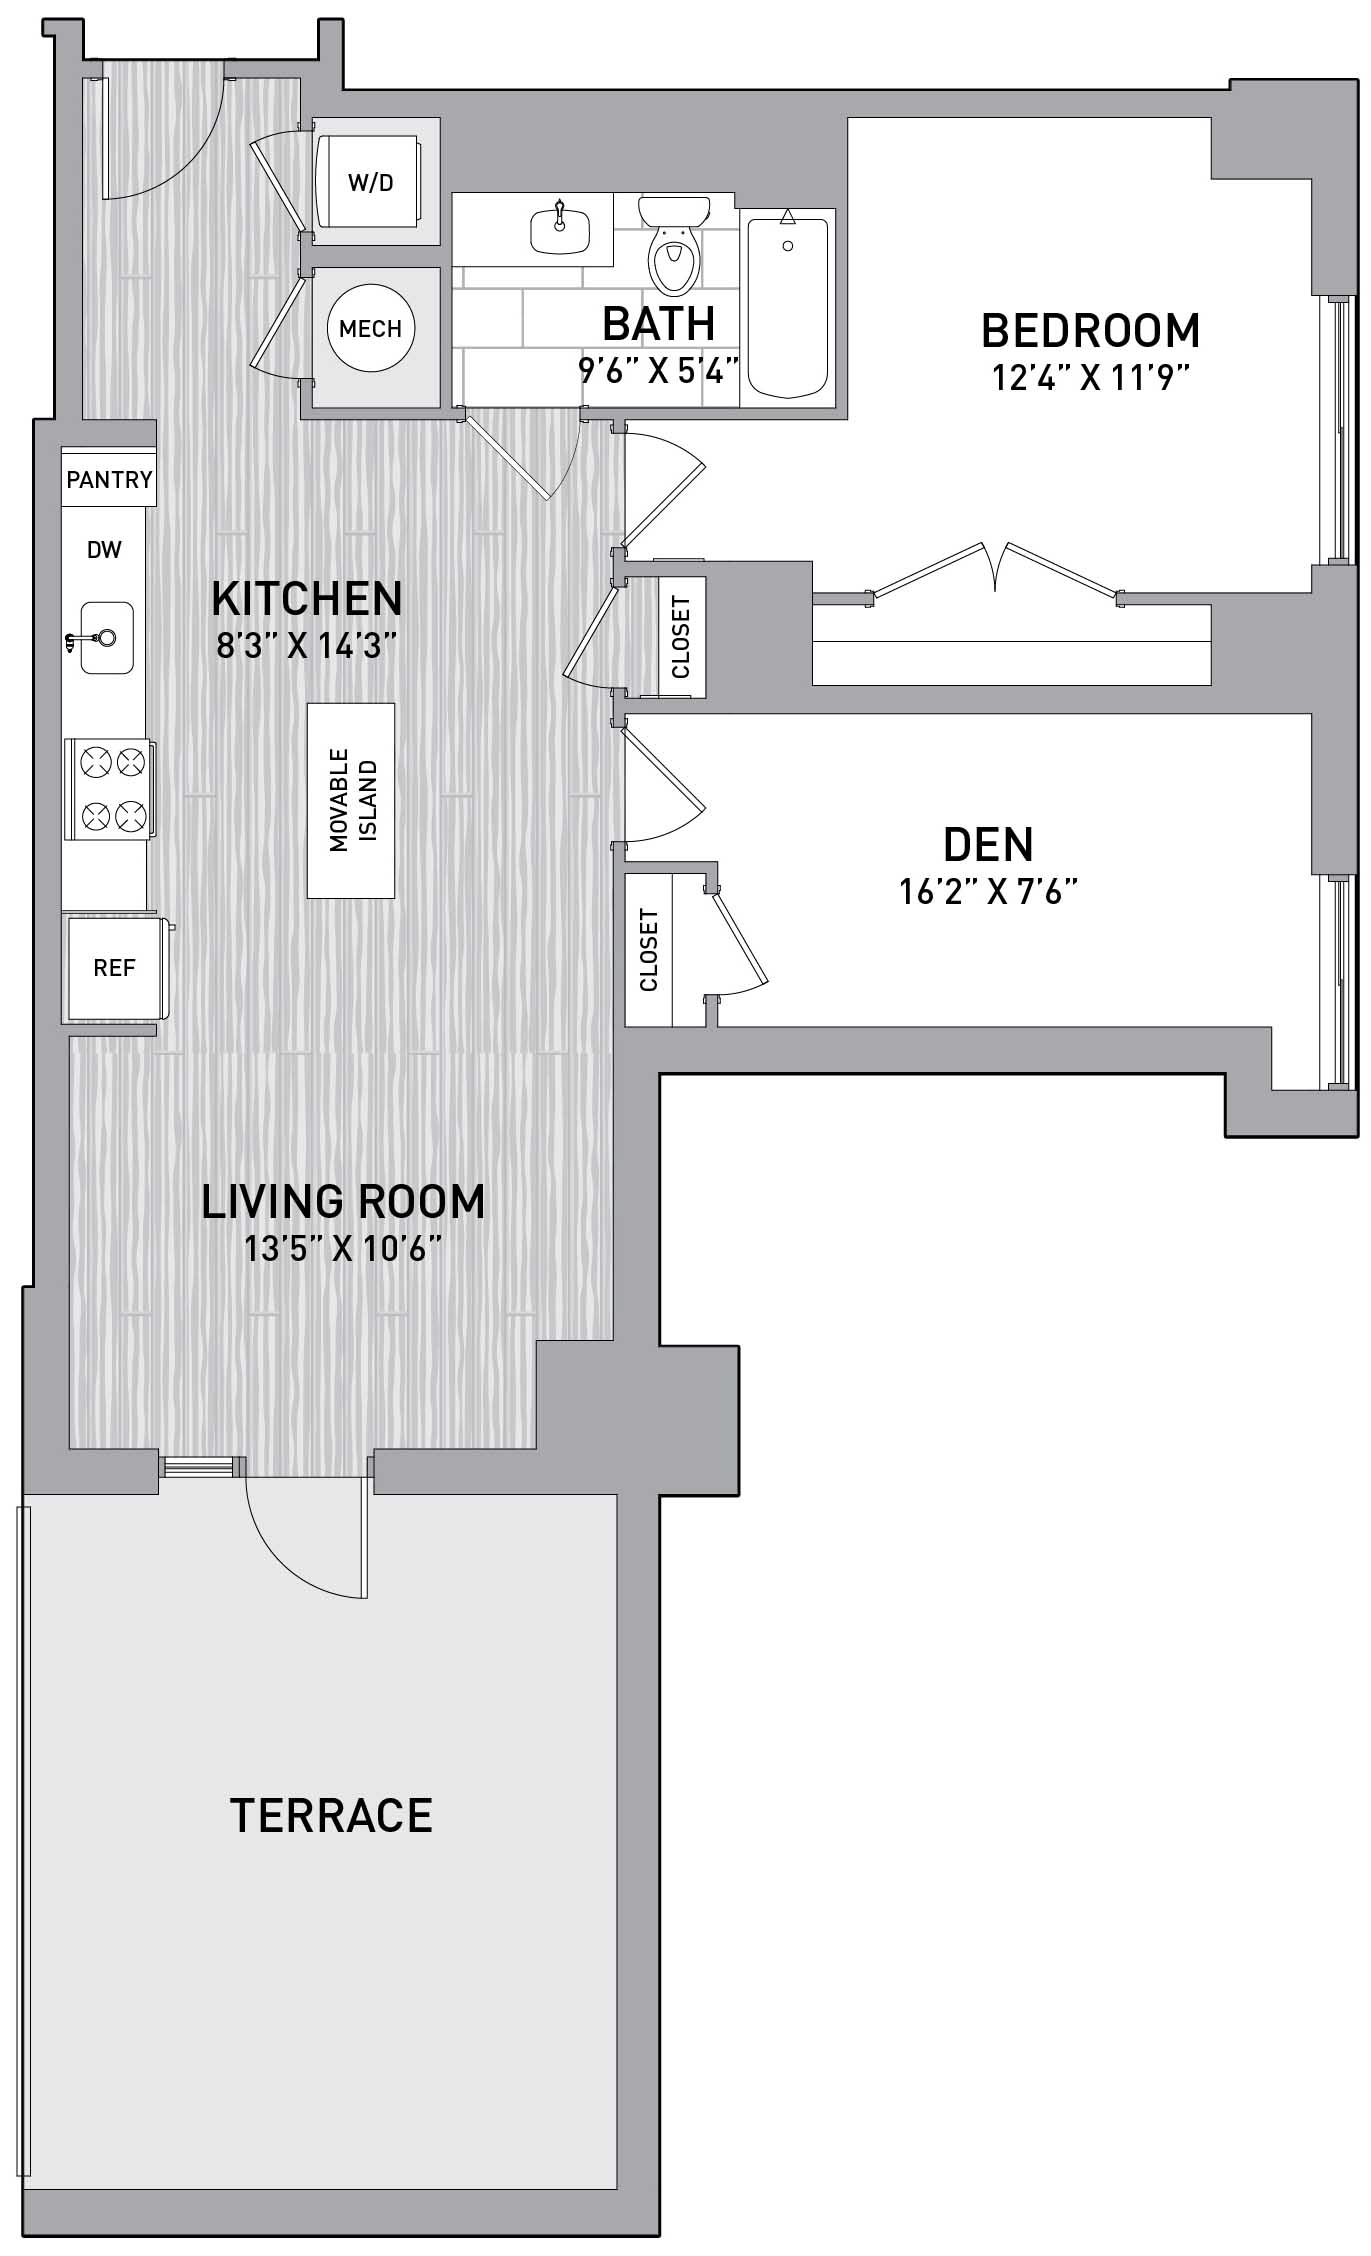 Floorplan Image of unit 151-0111